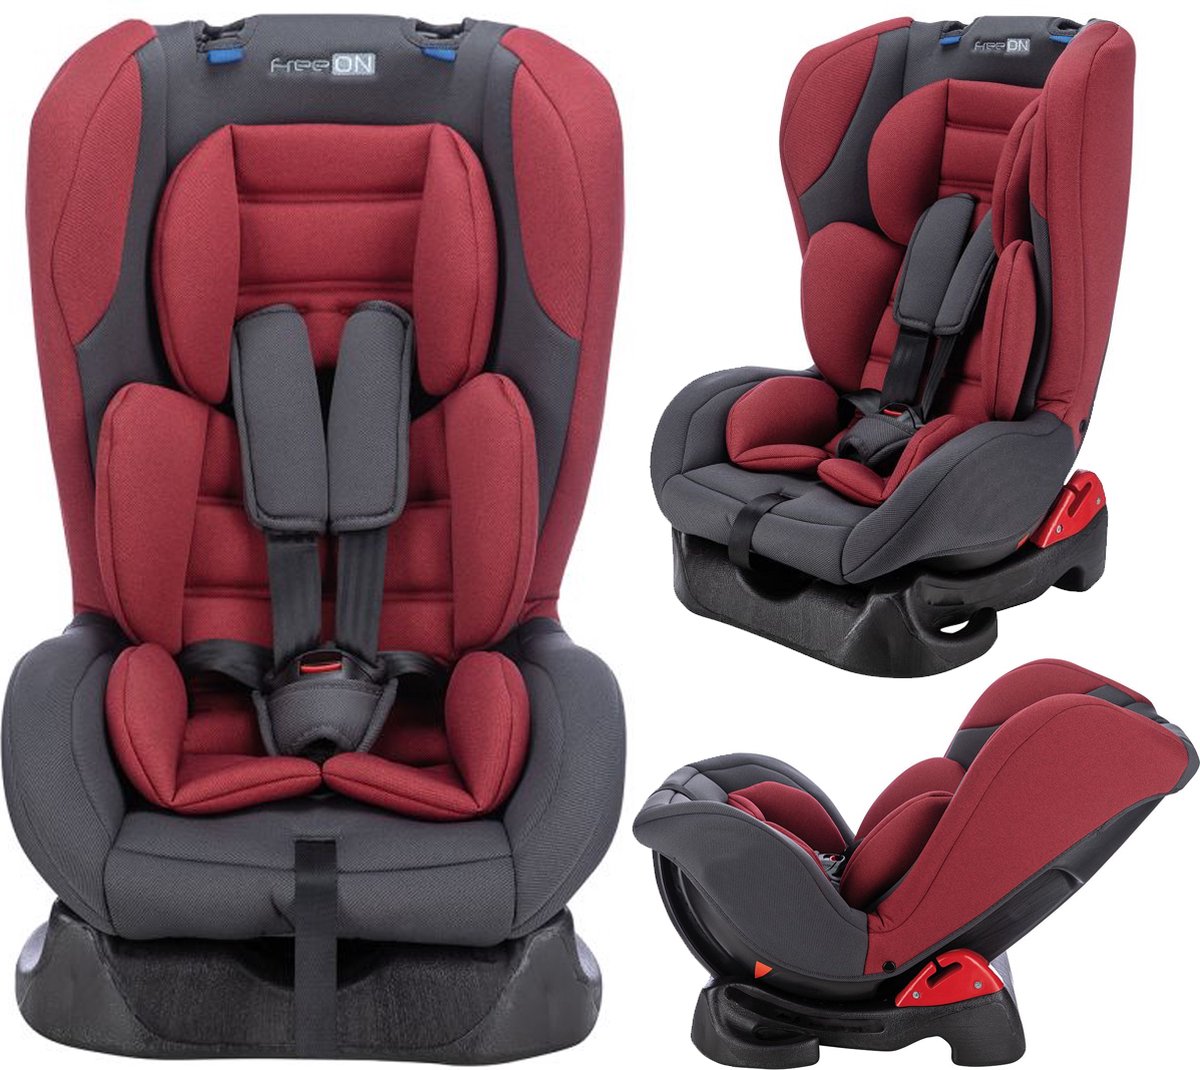 FreeON autostoel Erida Rood-Grijs (0-18kg) - Groep 0+1 autostoel voor kinderen van 0 tot 4 jaar